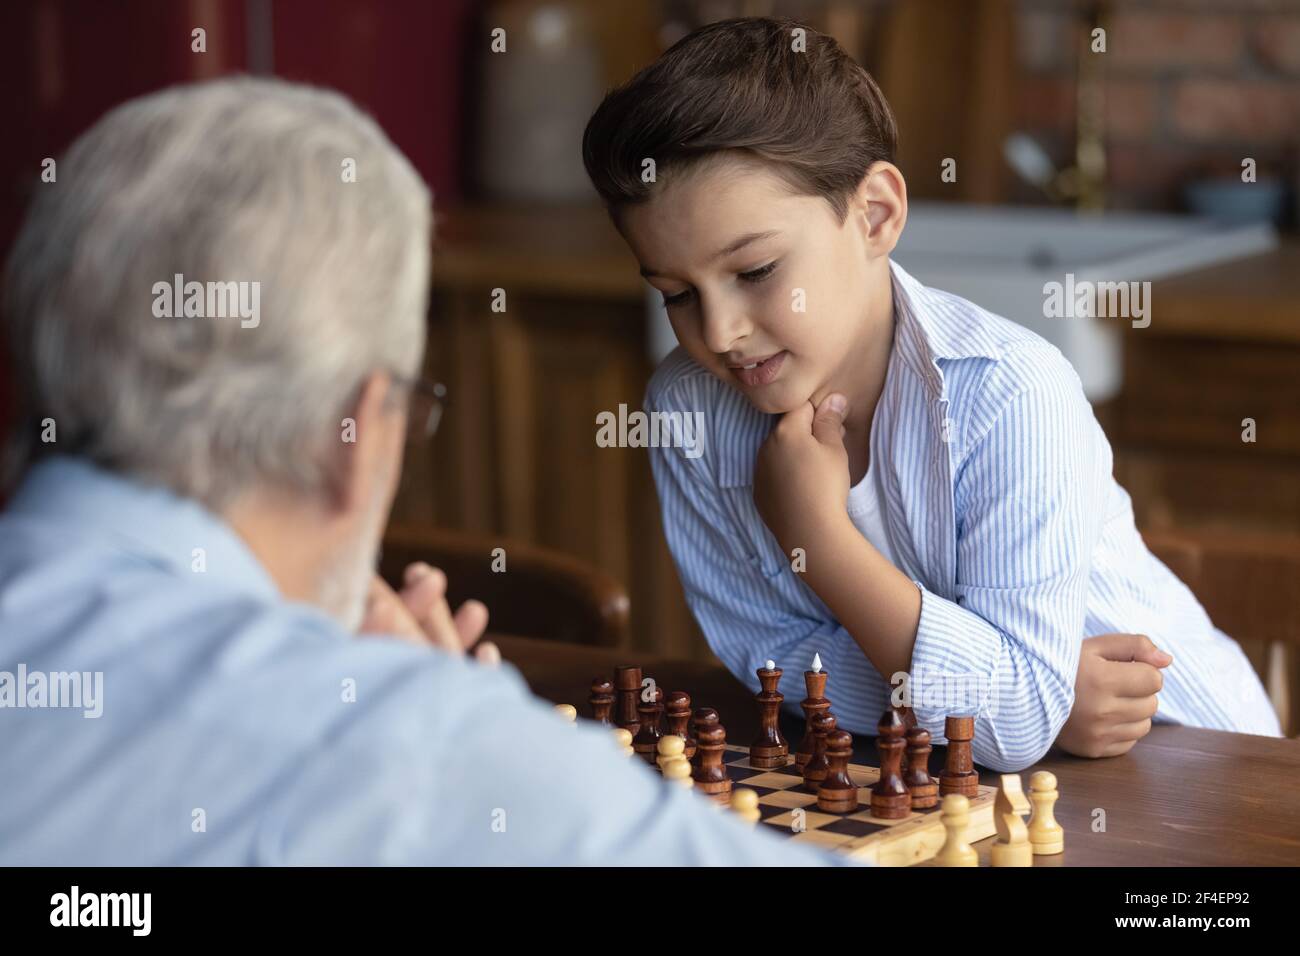 Petit-fils Smart 8s jouer aux échecs avec le vieux grand-père Banque D'Images